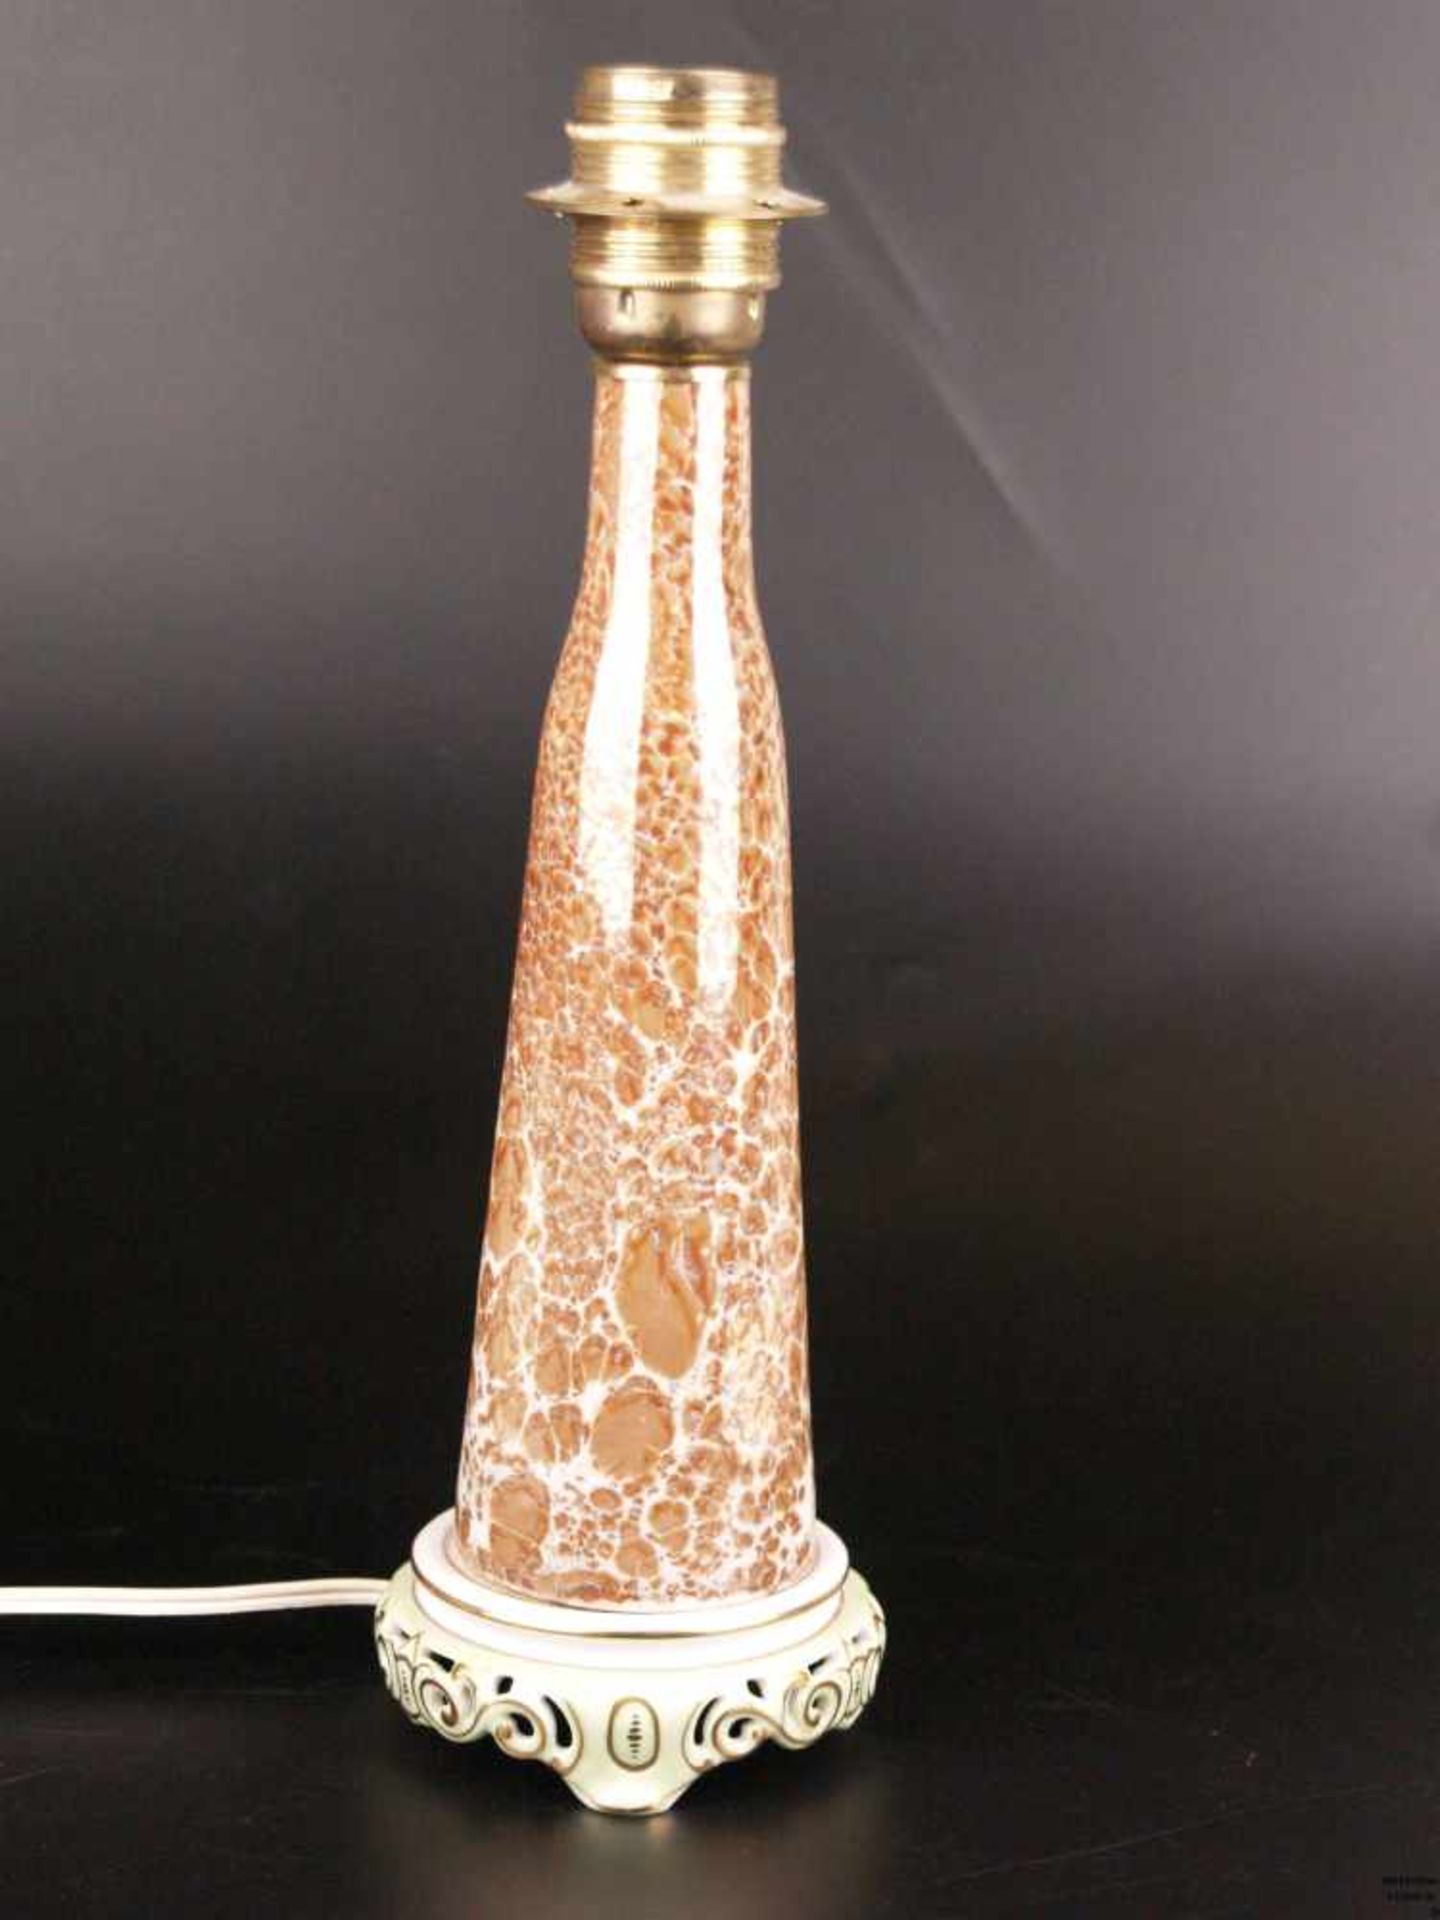 Lampe- Porzellan/Keramik/Metall, Lampensockel gemarkt Herend, Ungarn, konischer sich nach oben - Bild 3 aus 5